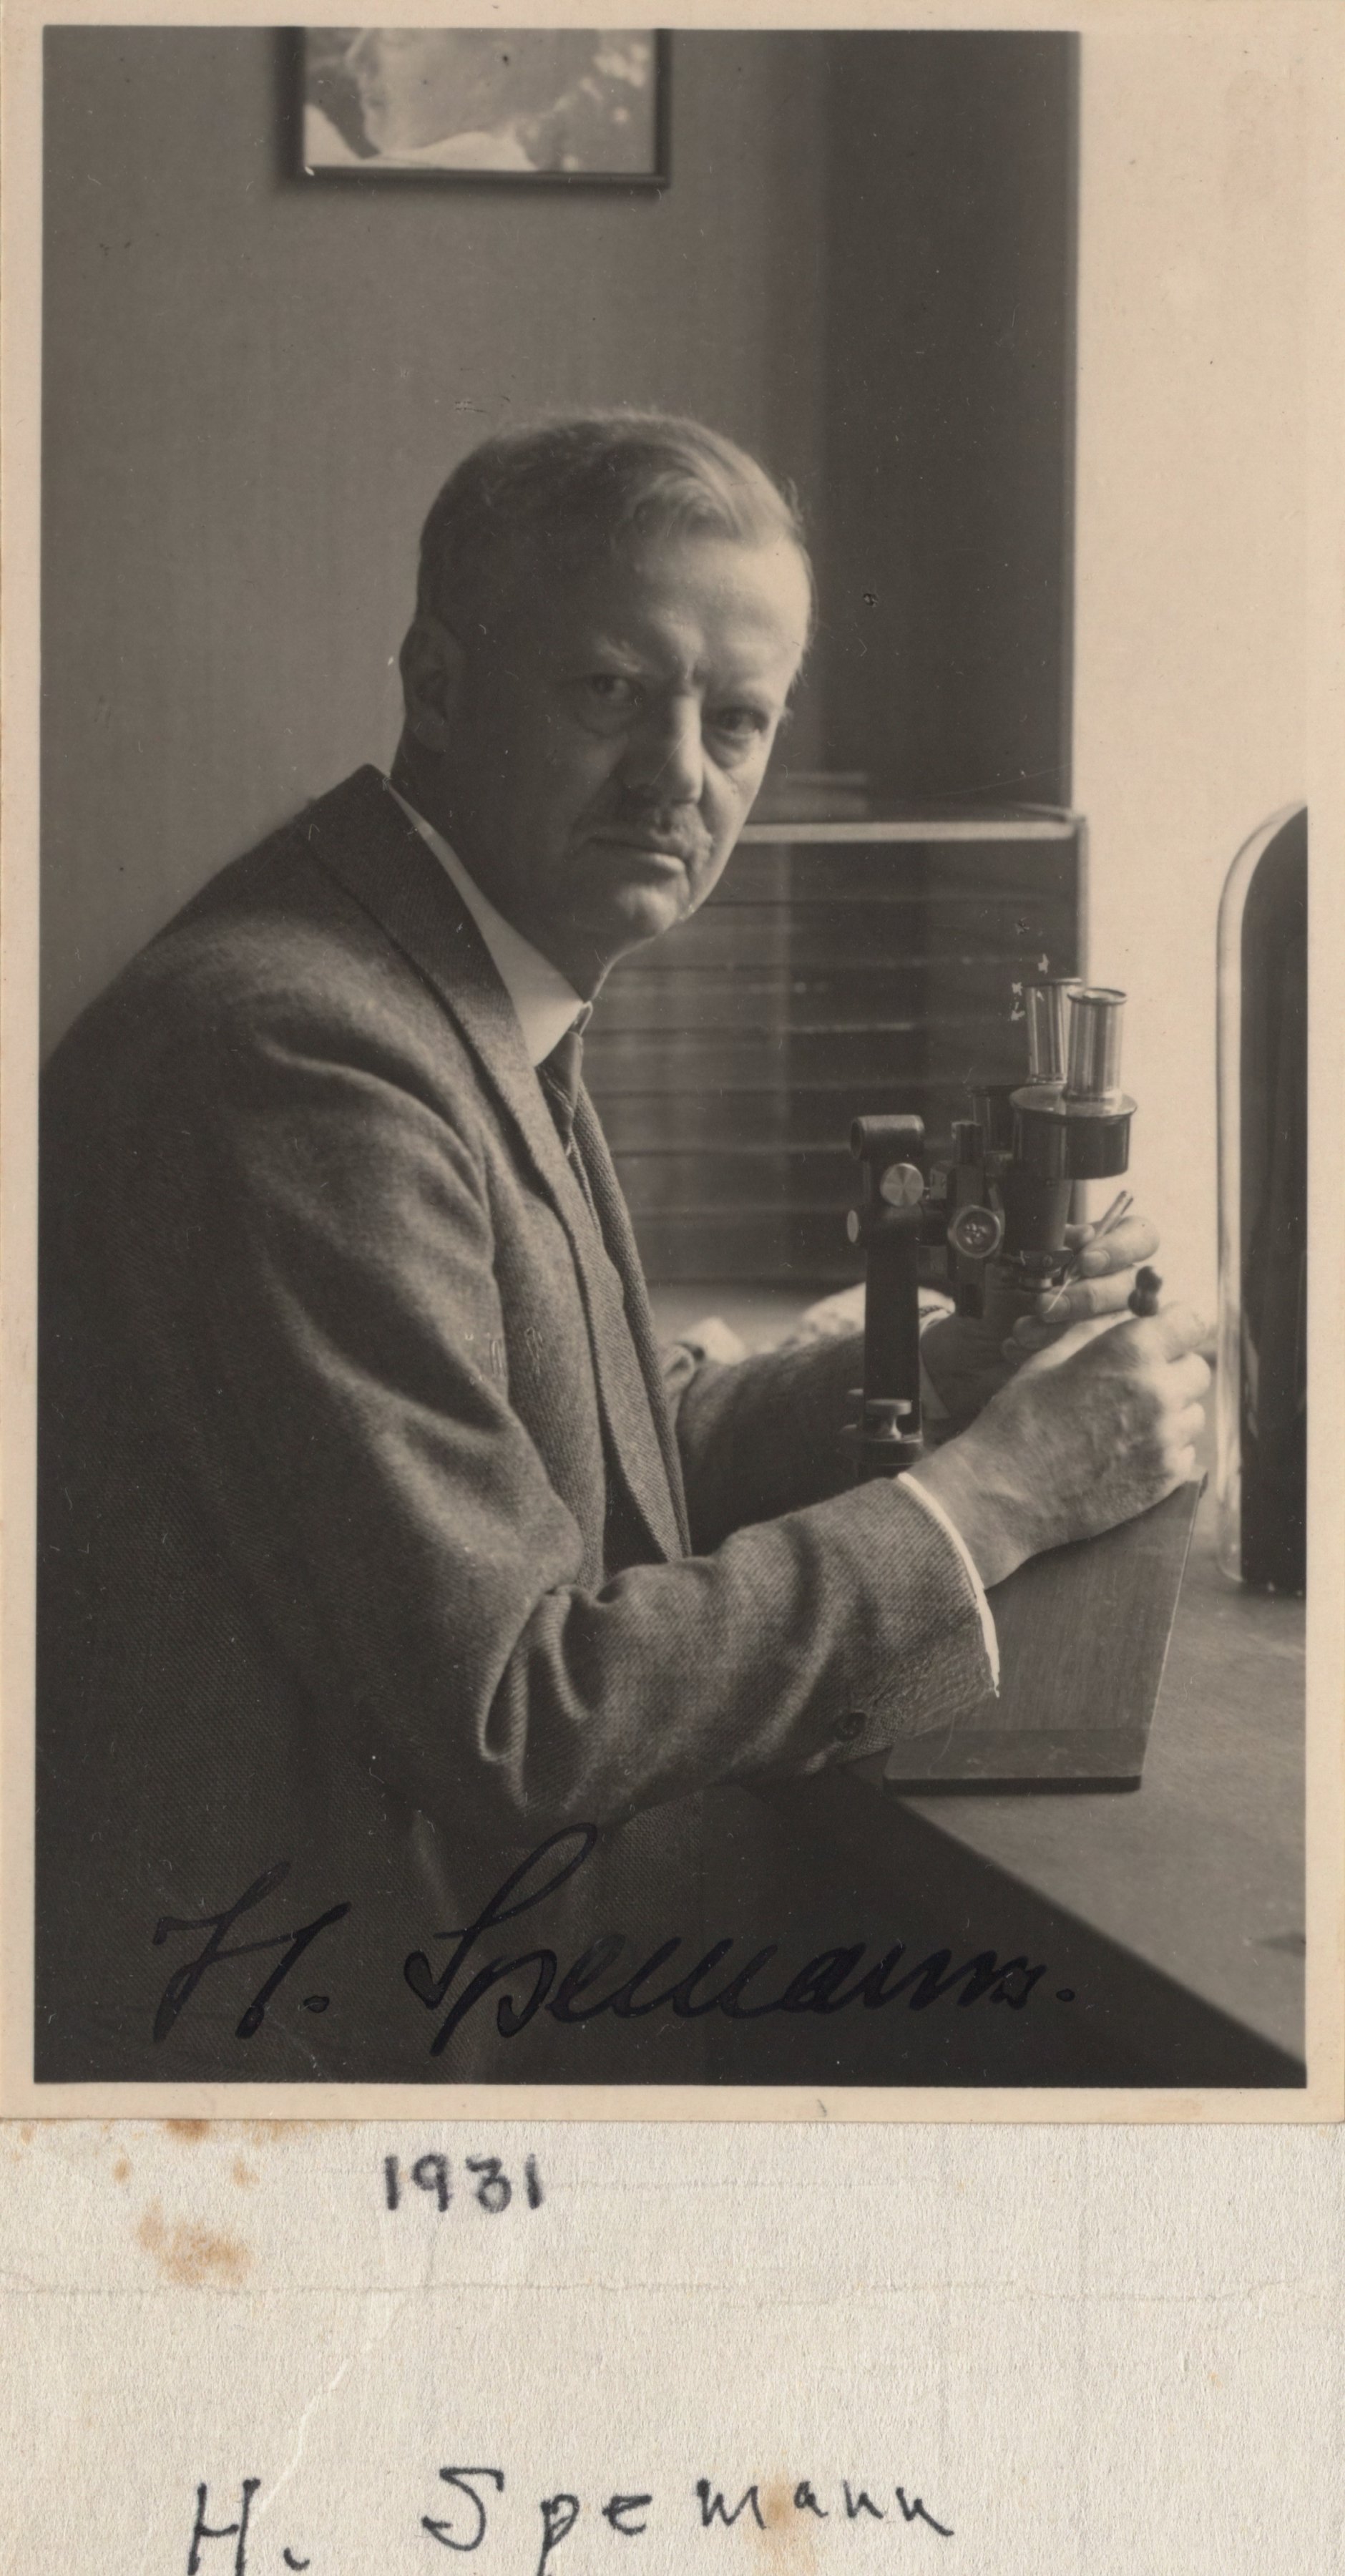 德国著名的胚胎学家汉斯·斯佩曼被希特勒迫害致死